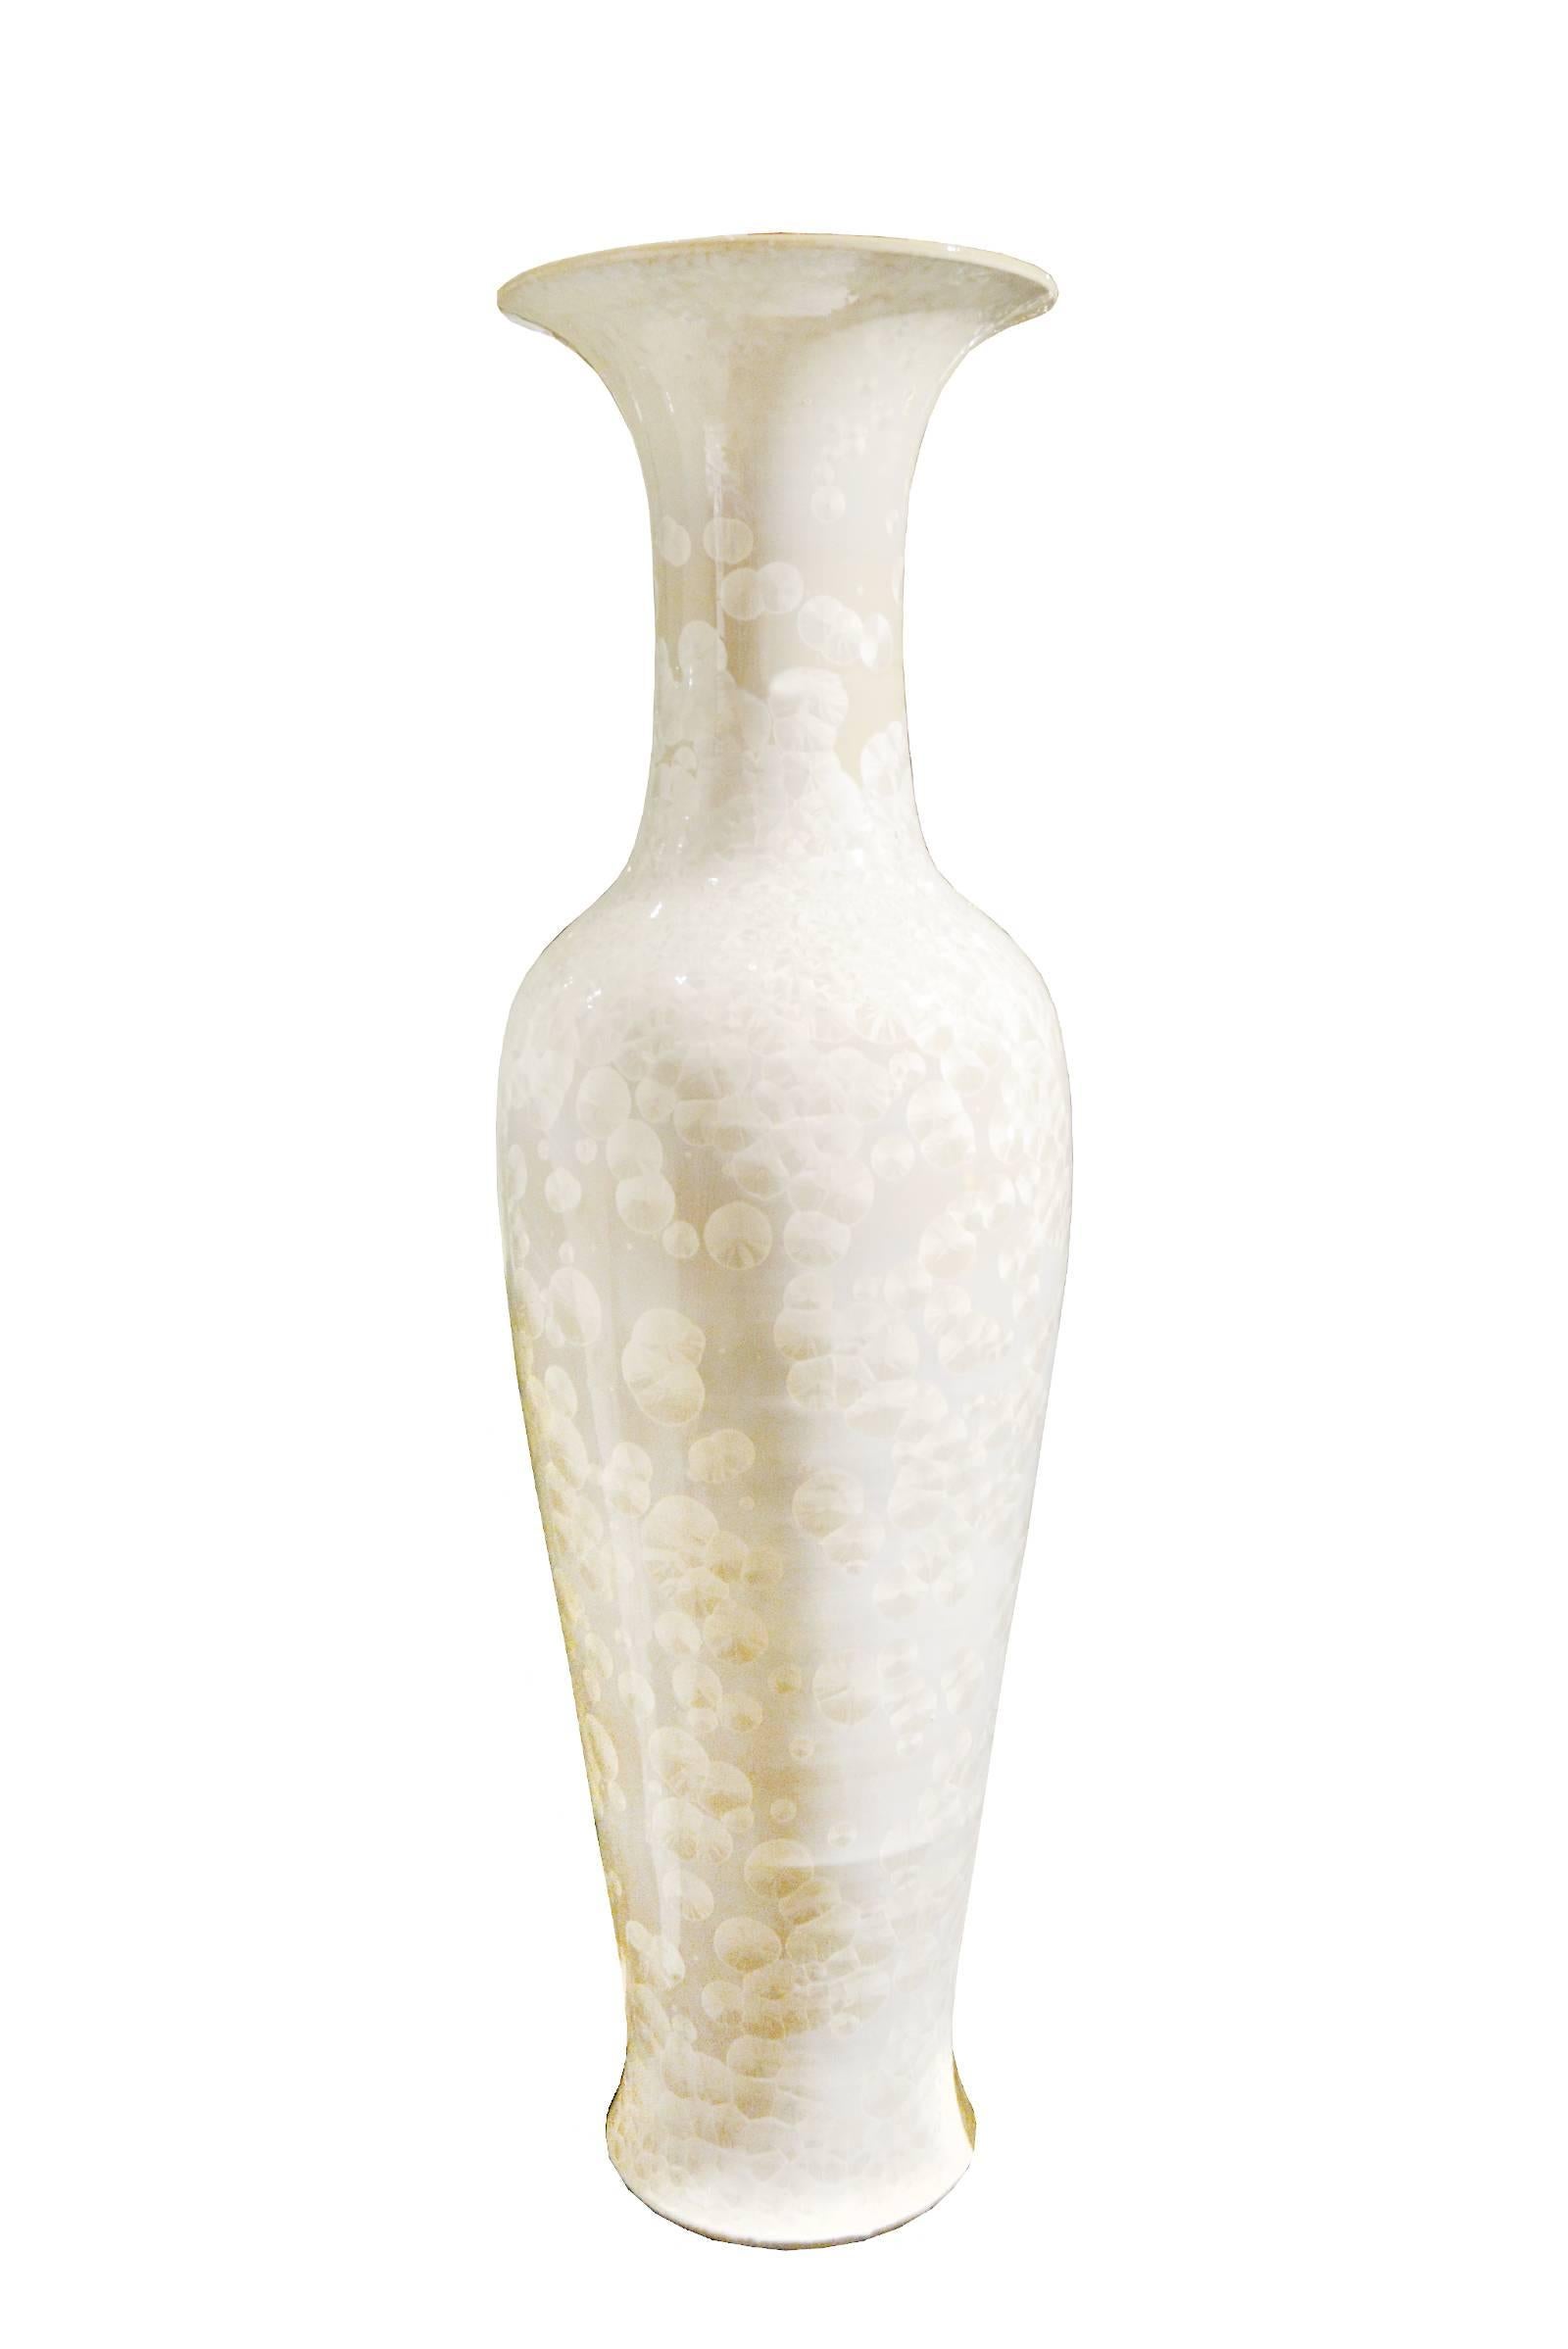 Vase Nacre white XL in porcelain,
Ø50xH185cm, price: 1800,00€
Also available in Medium
Ø40xH103cm, price: 650,00€
